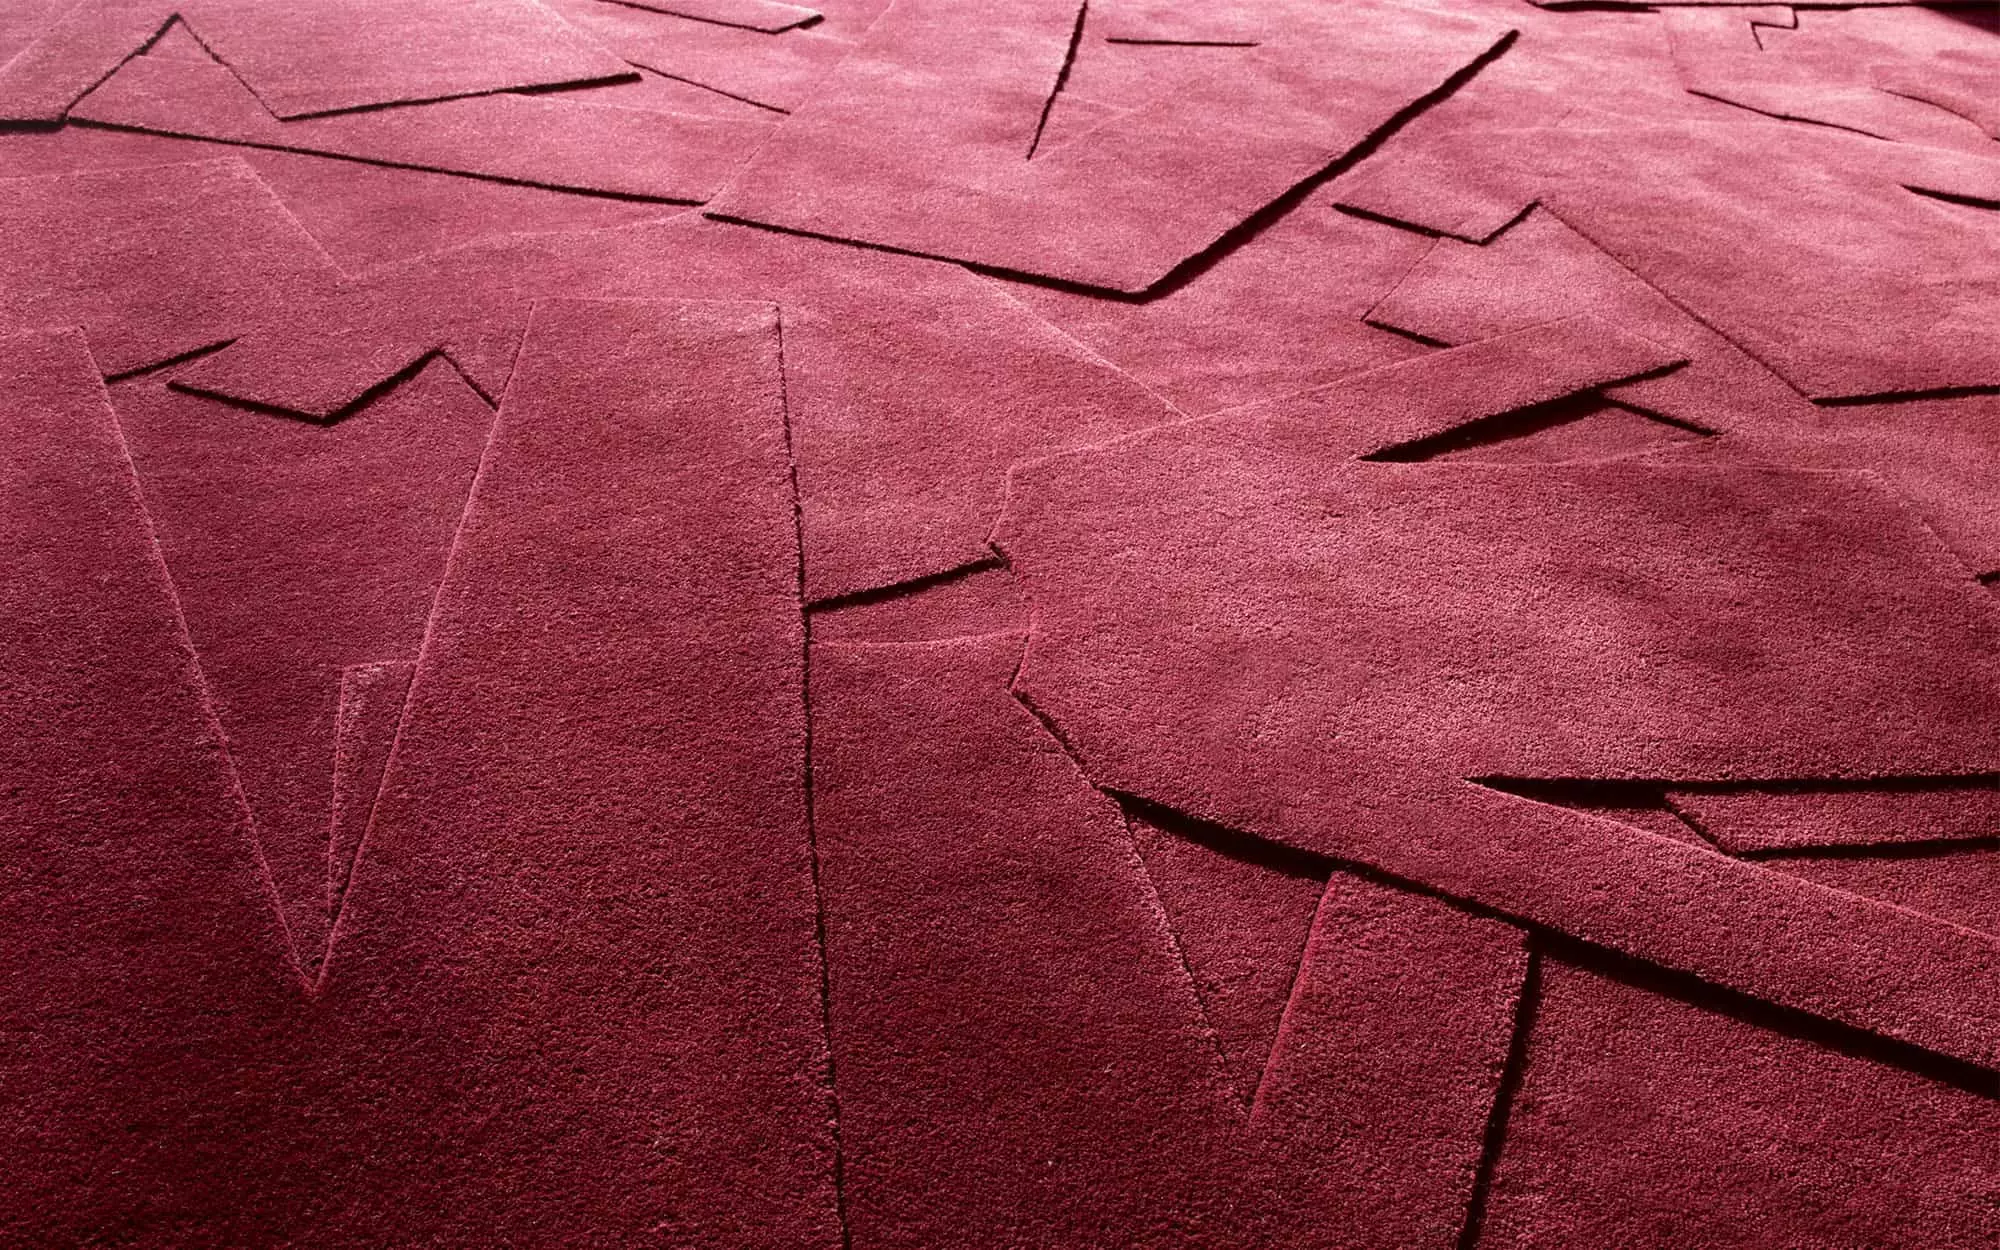 Dés-ordre Carpet - Adrien Rovero - Carpet - Galerie kreo